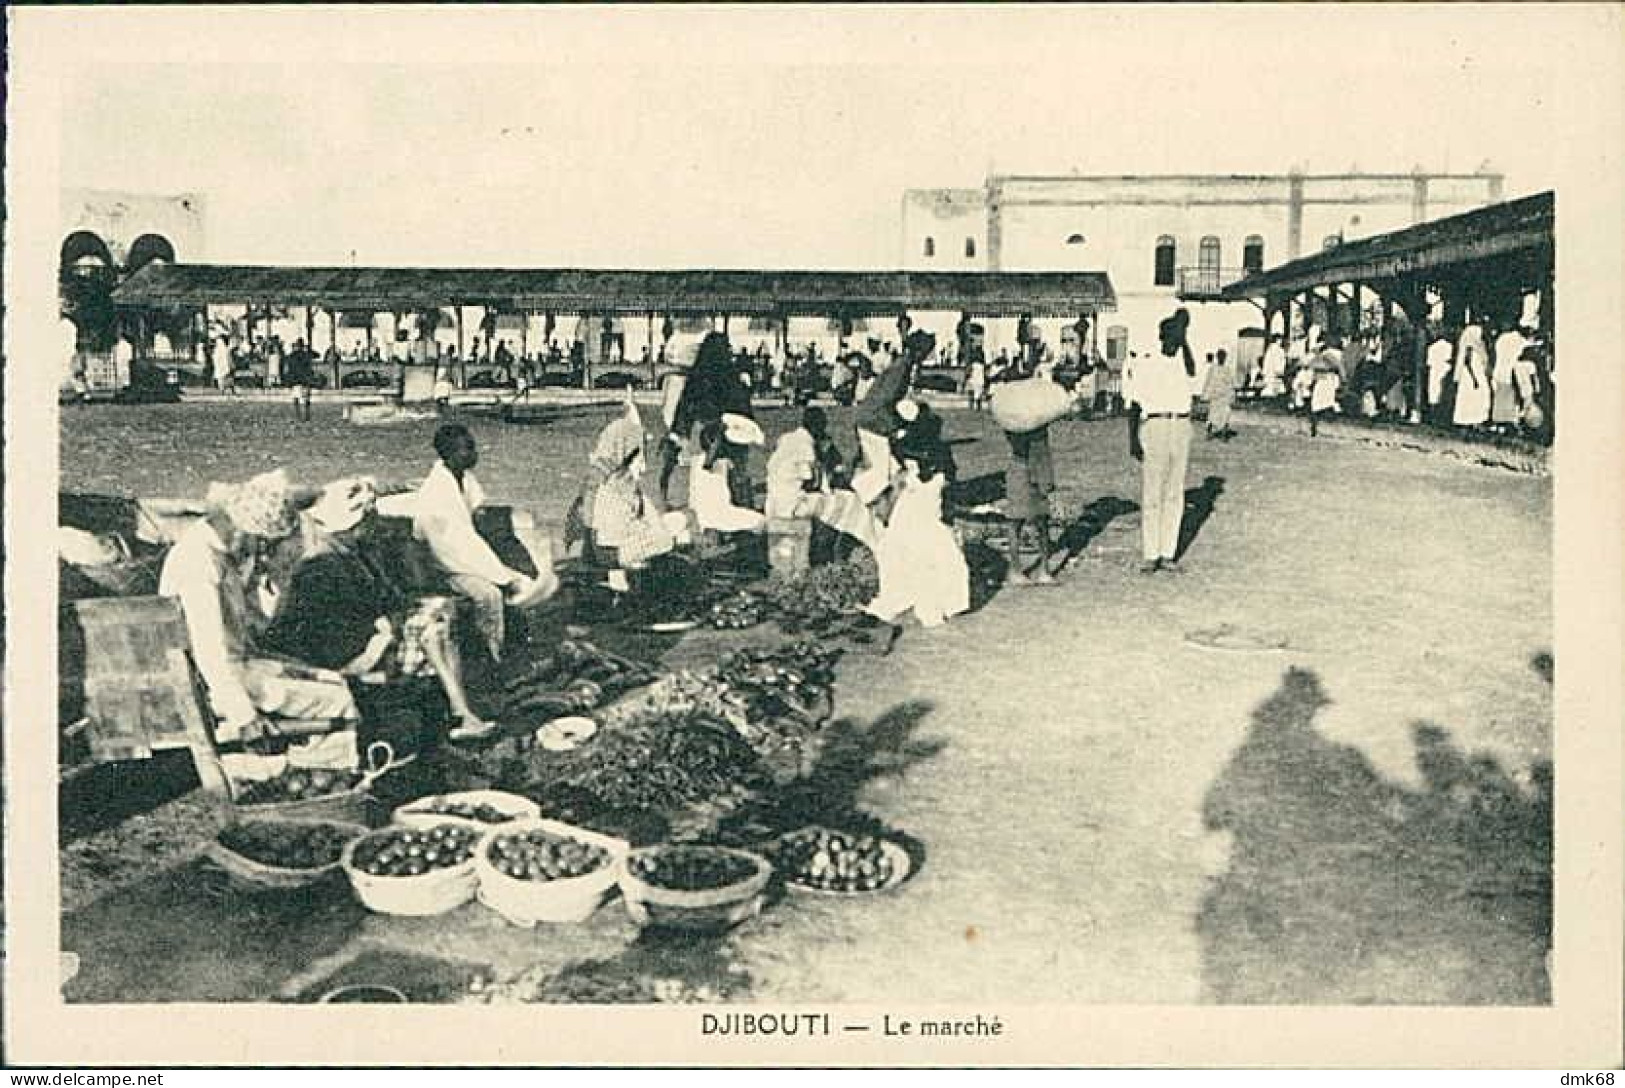 SOMALIA - DJIBOUTI - LE MARCHE - CLICHE G. B. - 1910s (12154) - Somalia